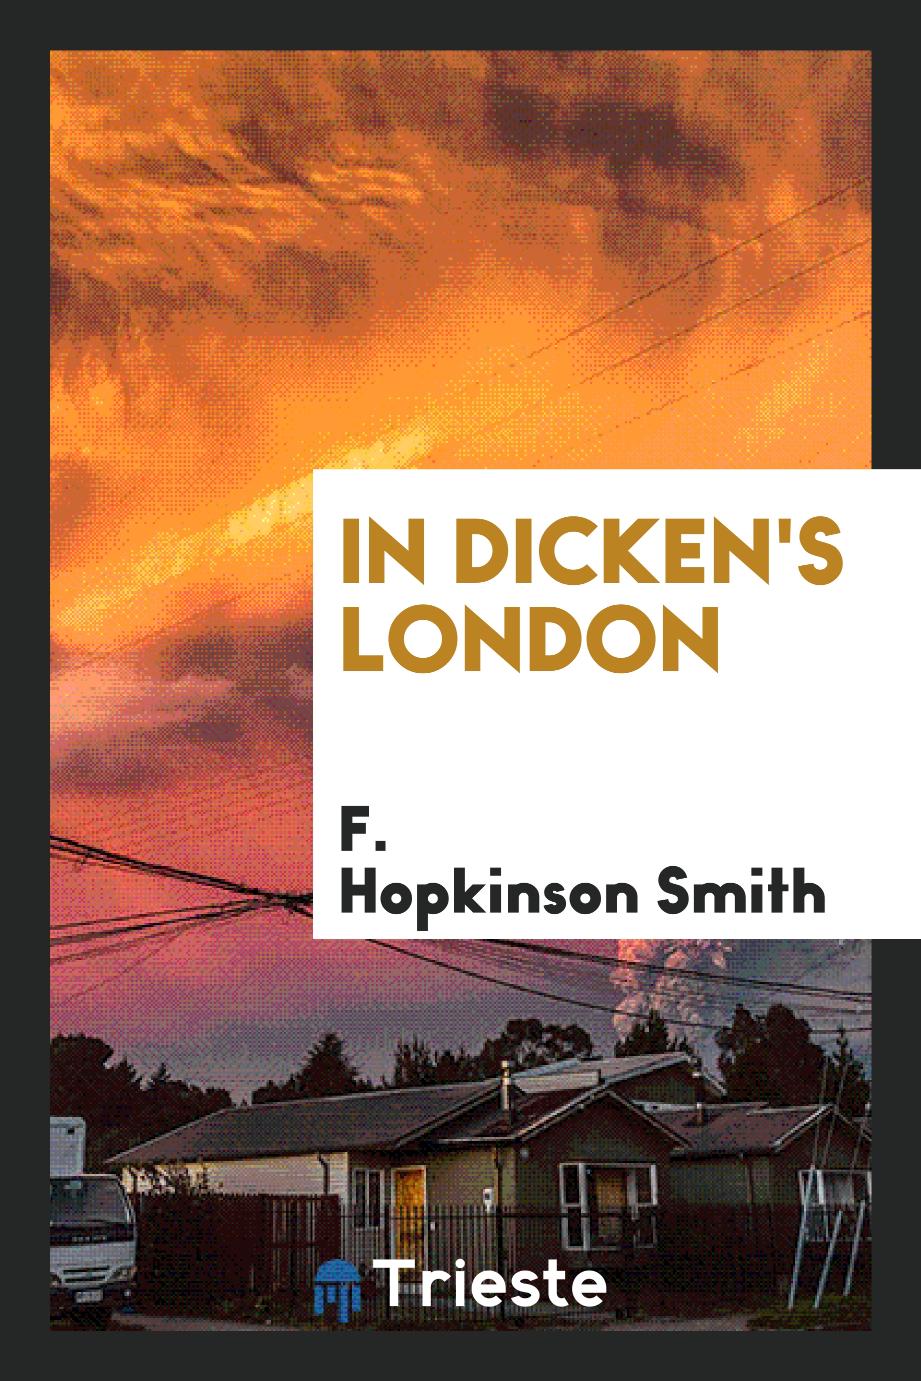 In Dicken's London